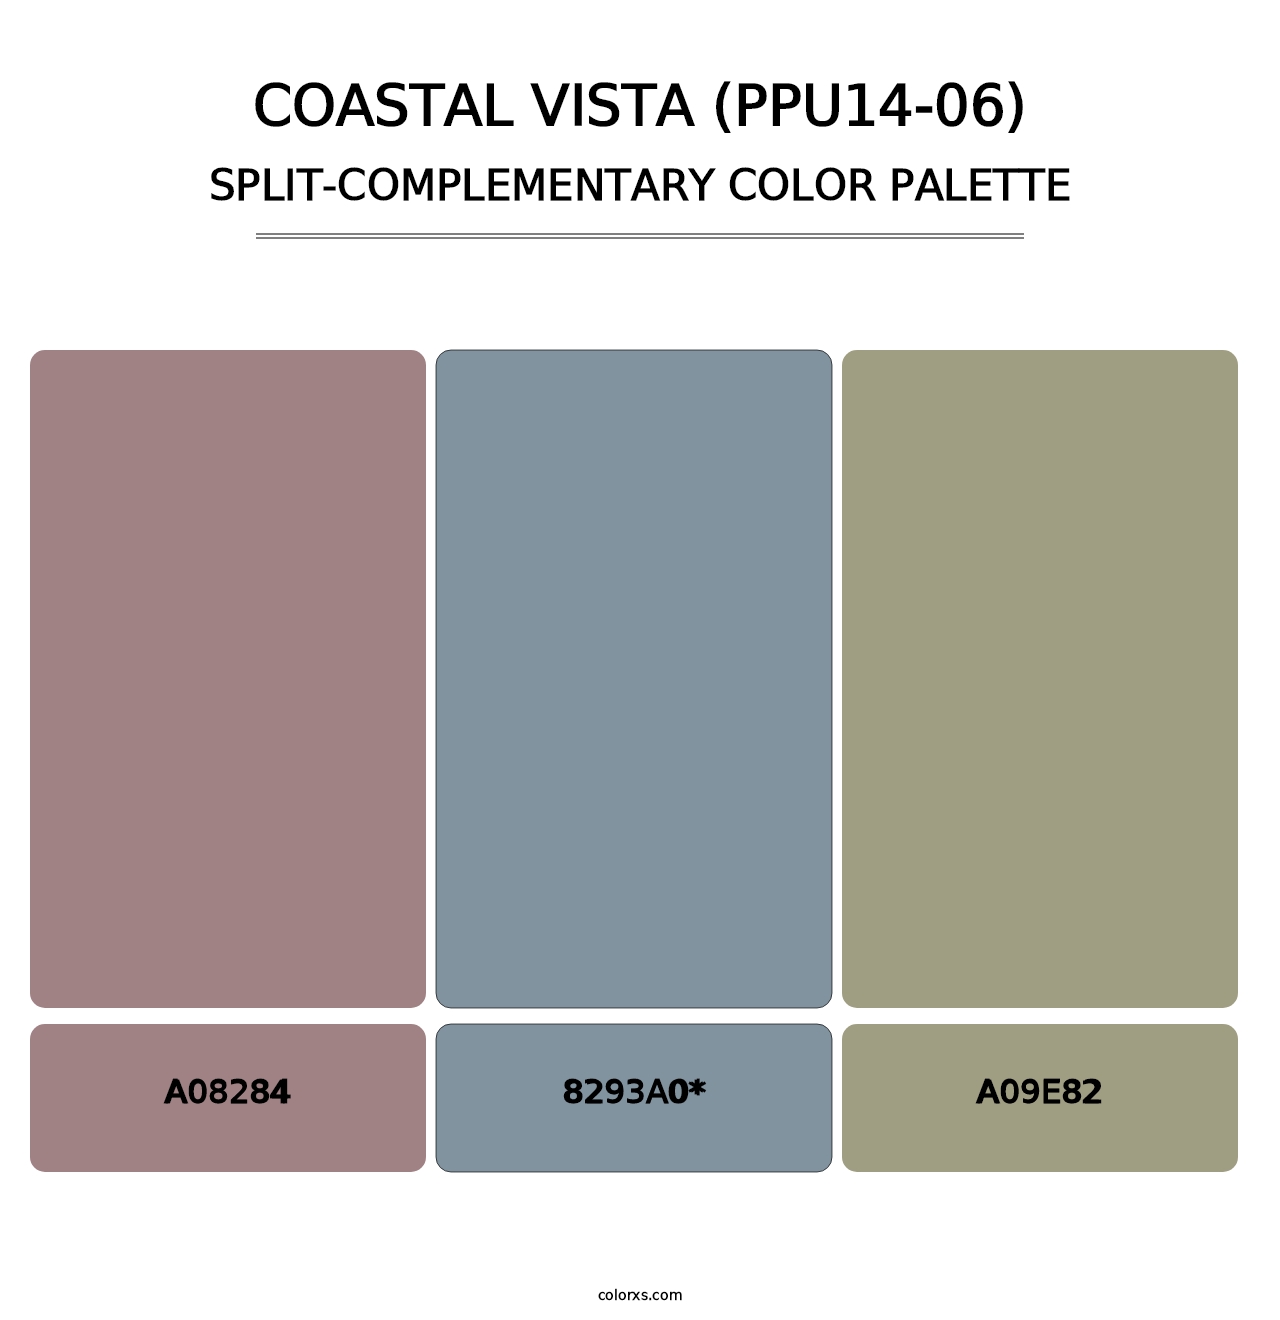 Coastal Vista (PPU14-06) - Split-Complementary Color Palette